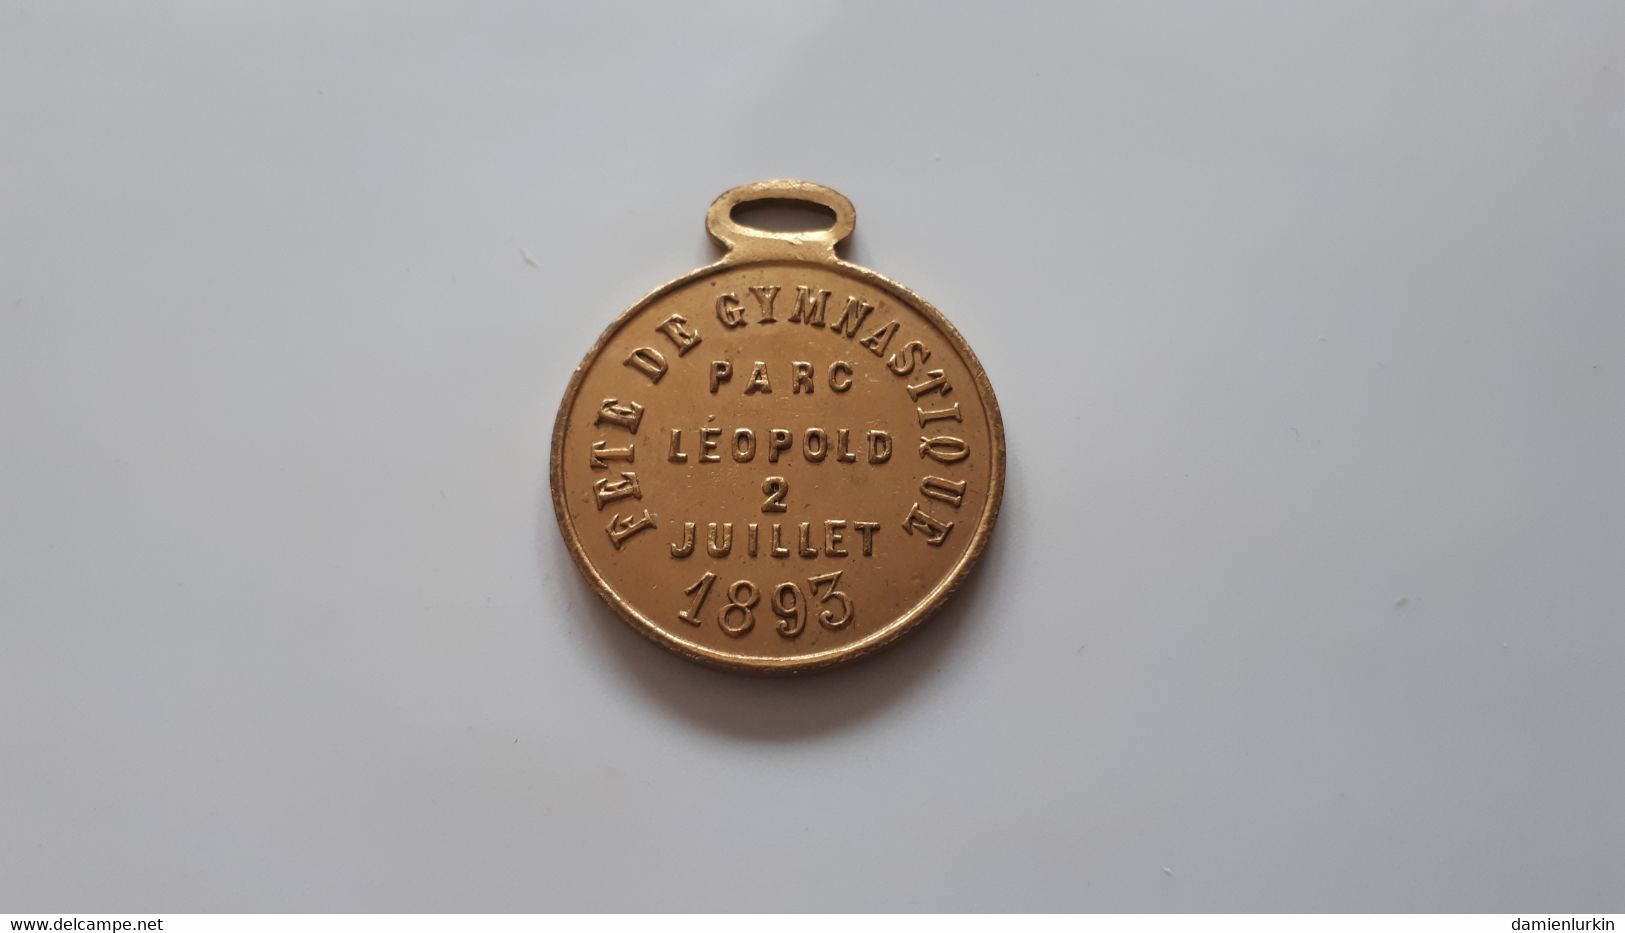 BELGIQUE LEOPOLD II MEDAILLE FETE DE LA GYMNASTIQUE PARC LEOPOLD 2 JUILLET 1893 34/28MM 7GR - Monarchia / Nobiltà